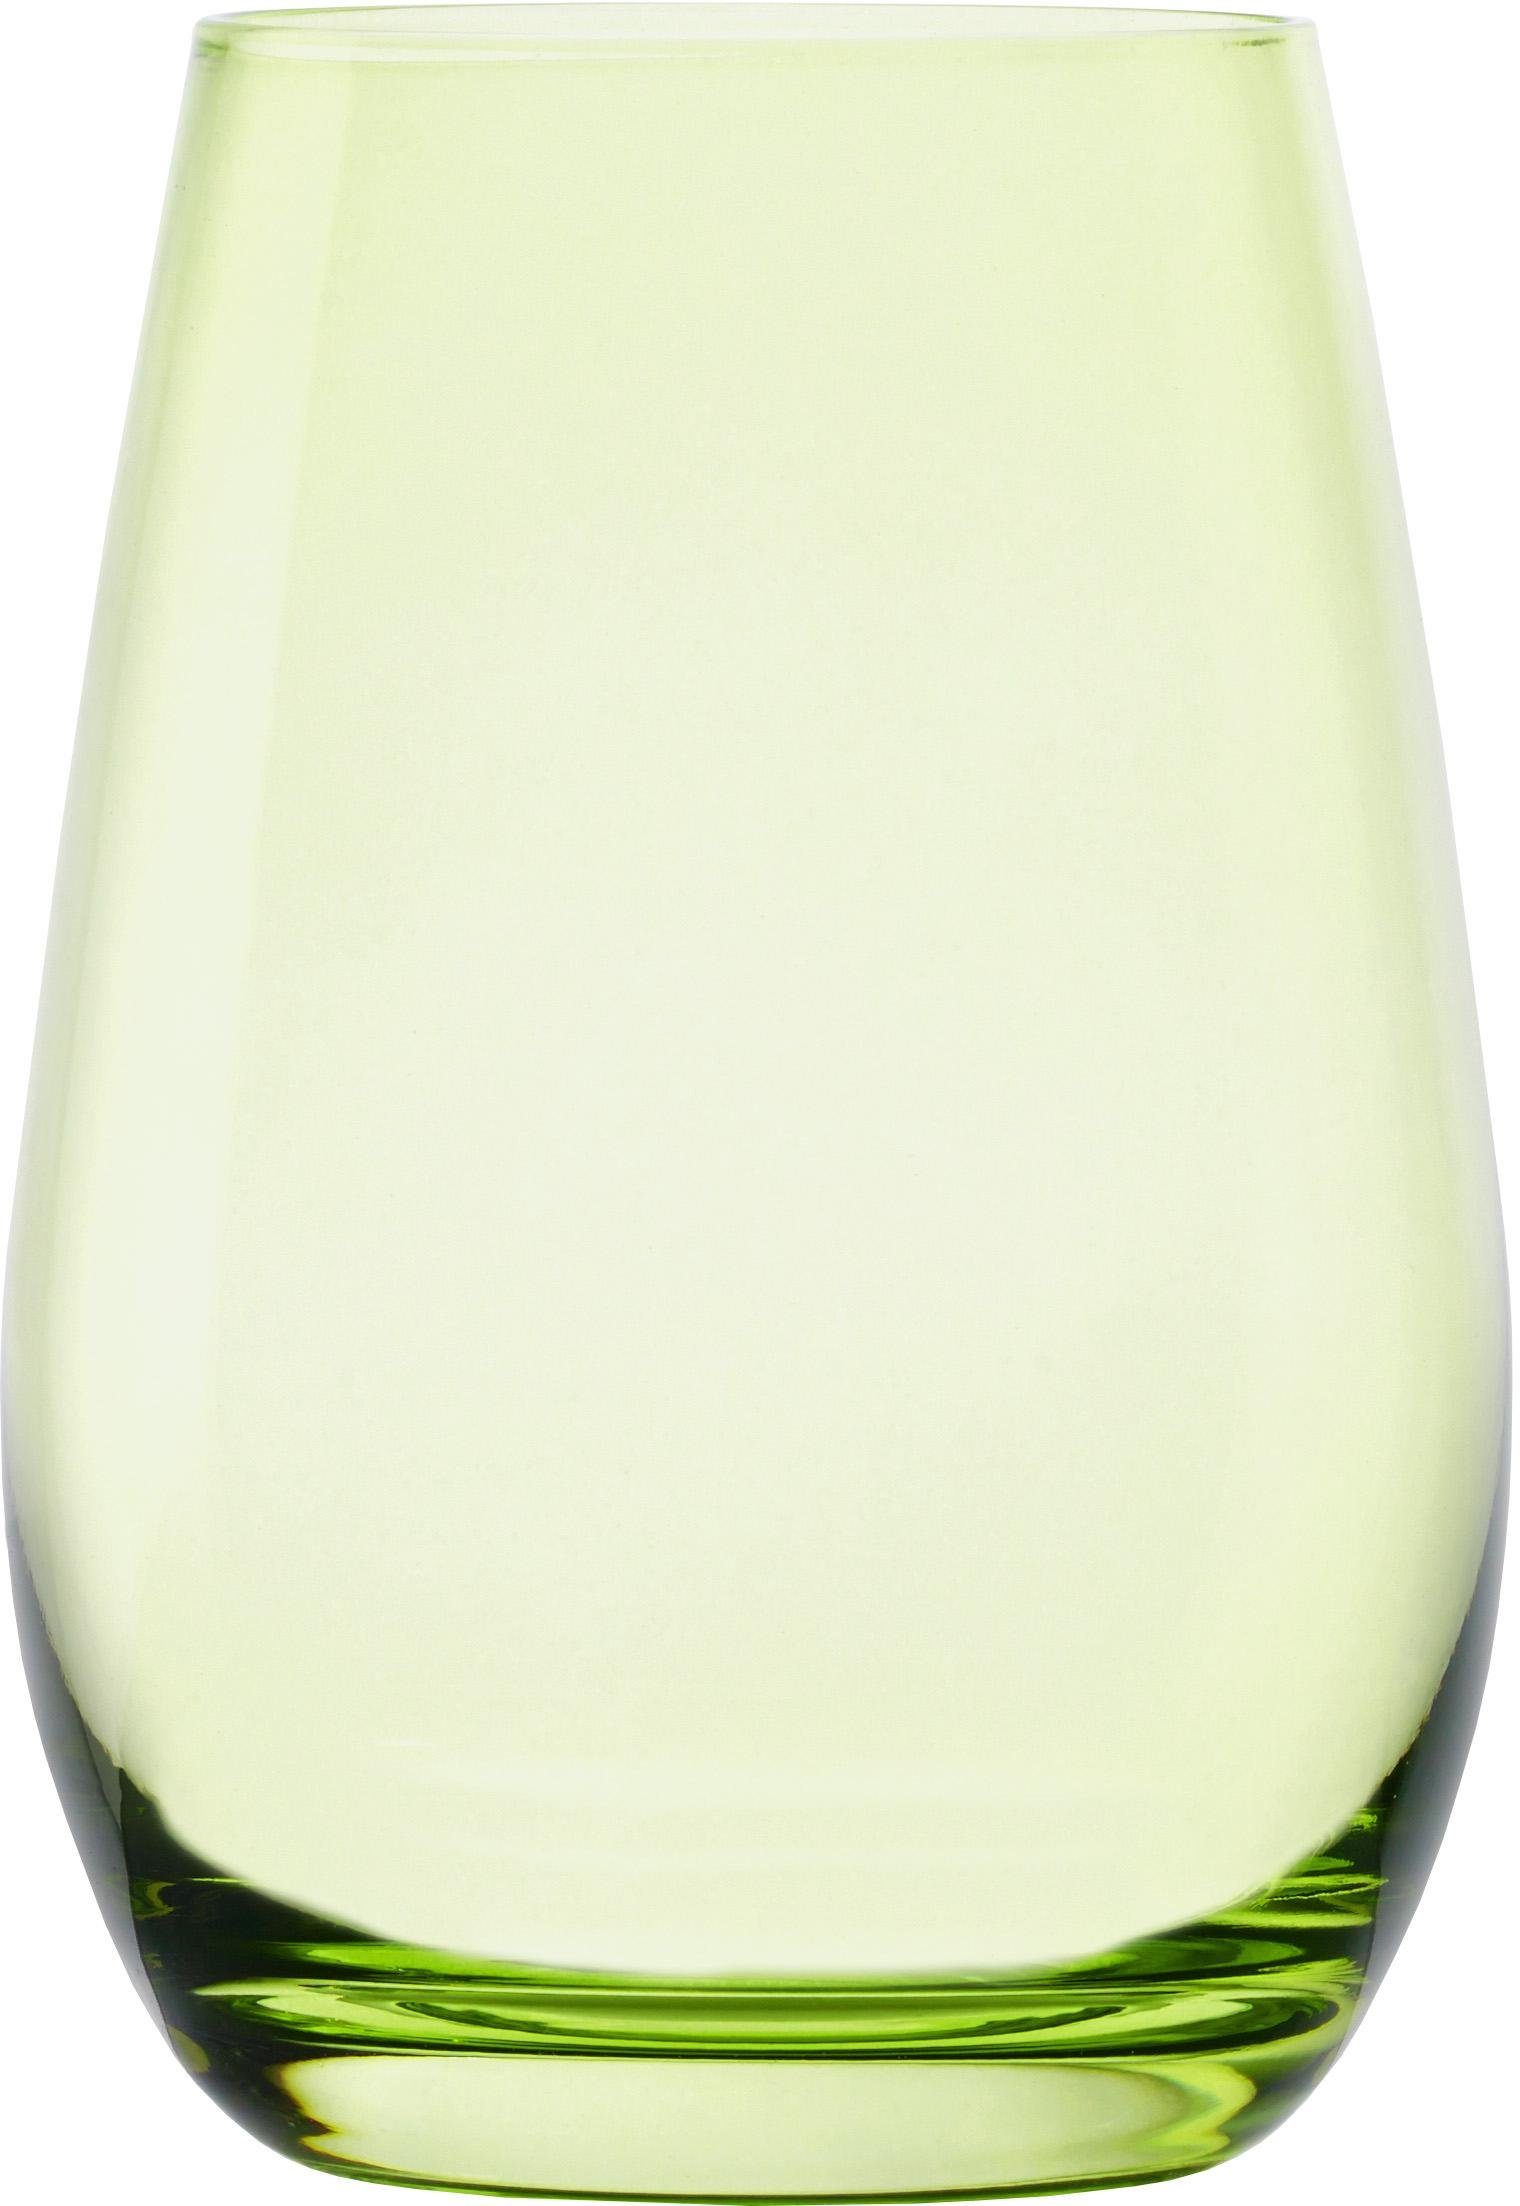 ELEMENTS, Stölzle grün Becher 6-teilig Glas,